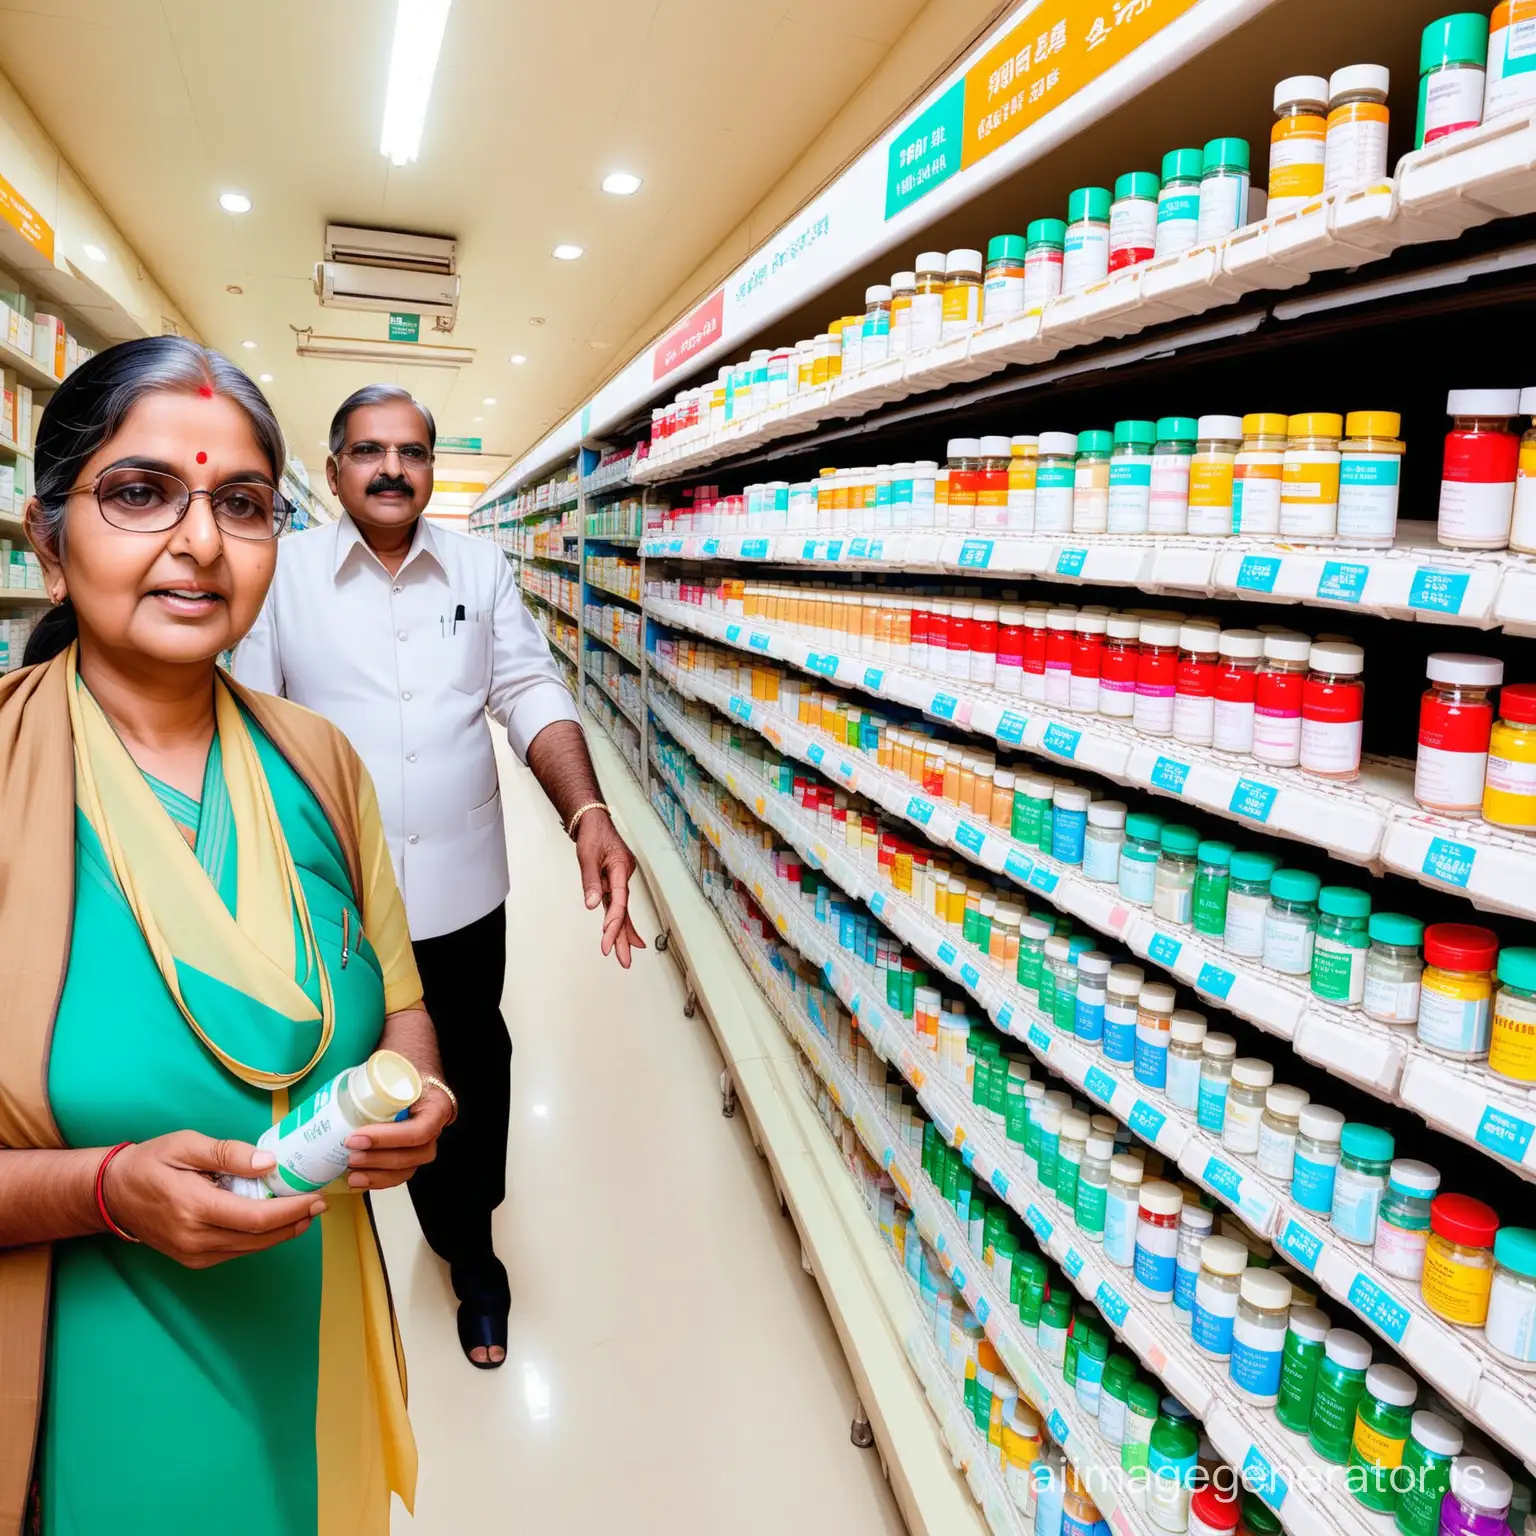 Continue rising prices of medicines in India